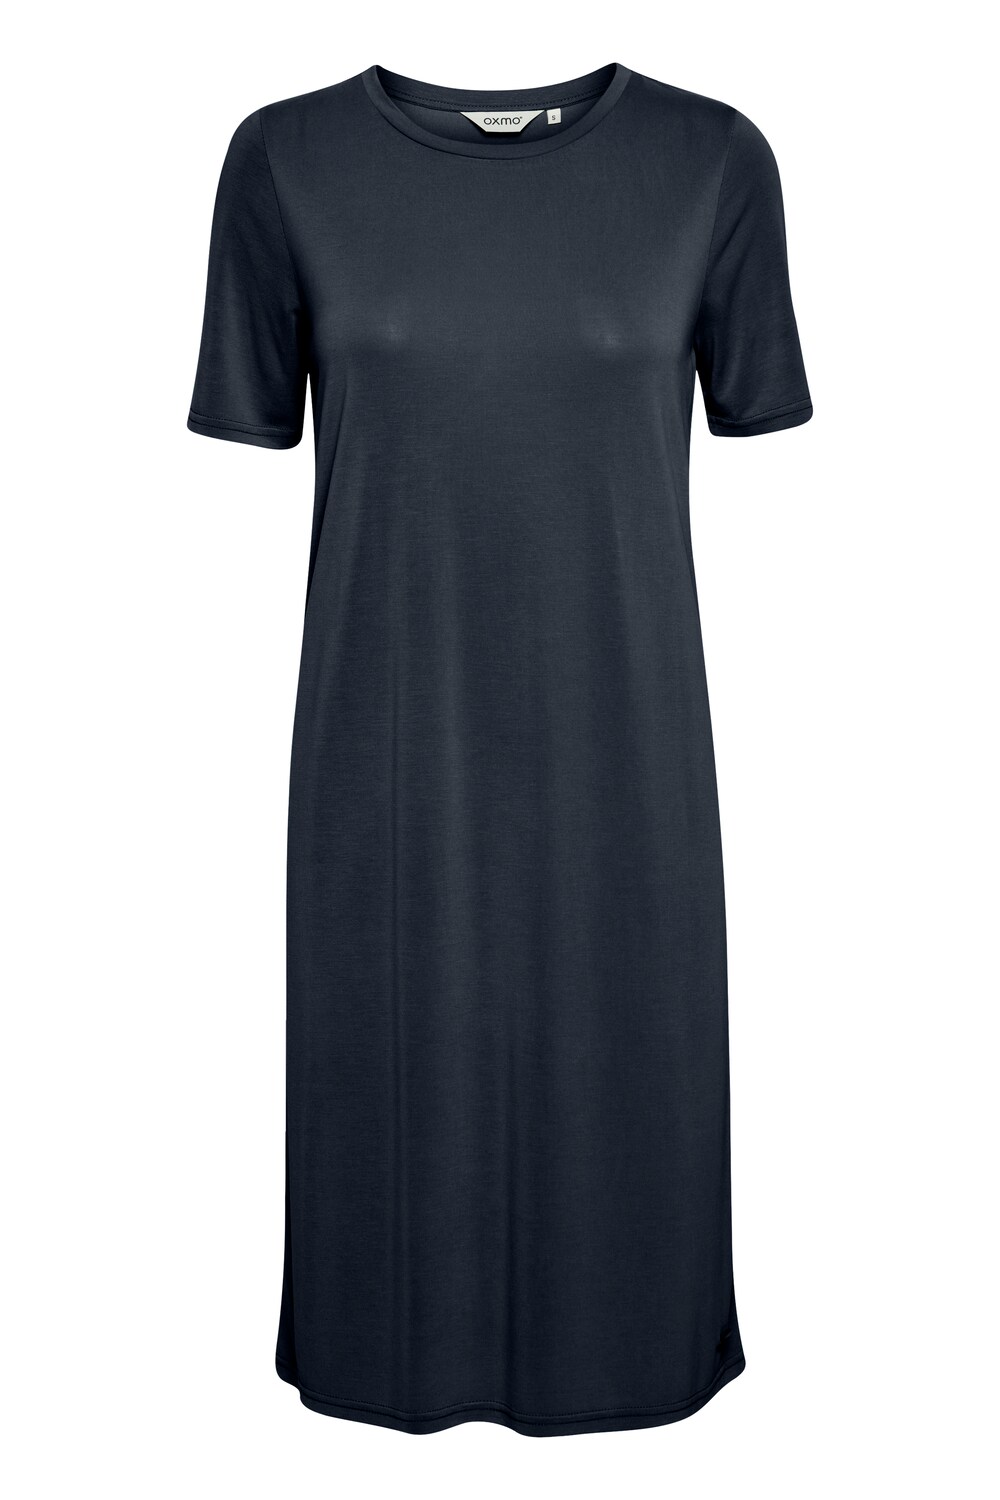 Платье Oxmo Brinja, пестрый черный